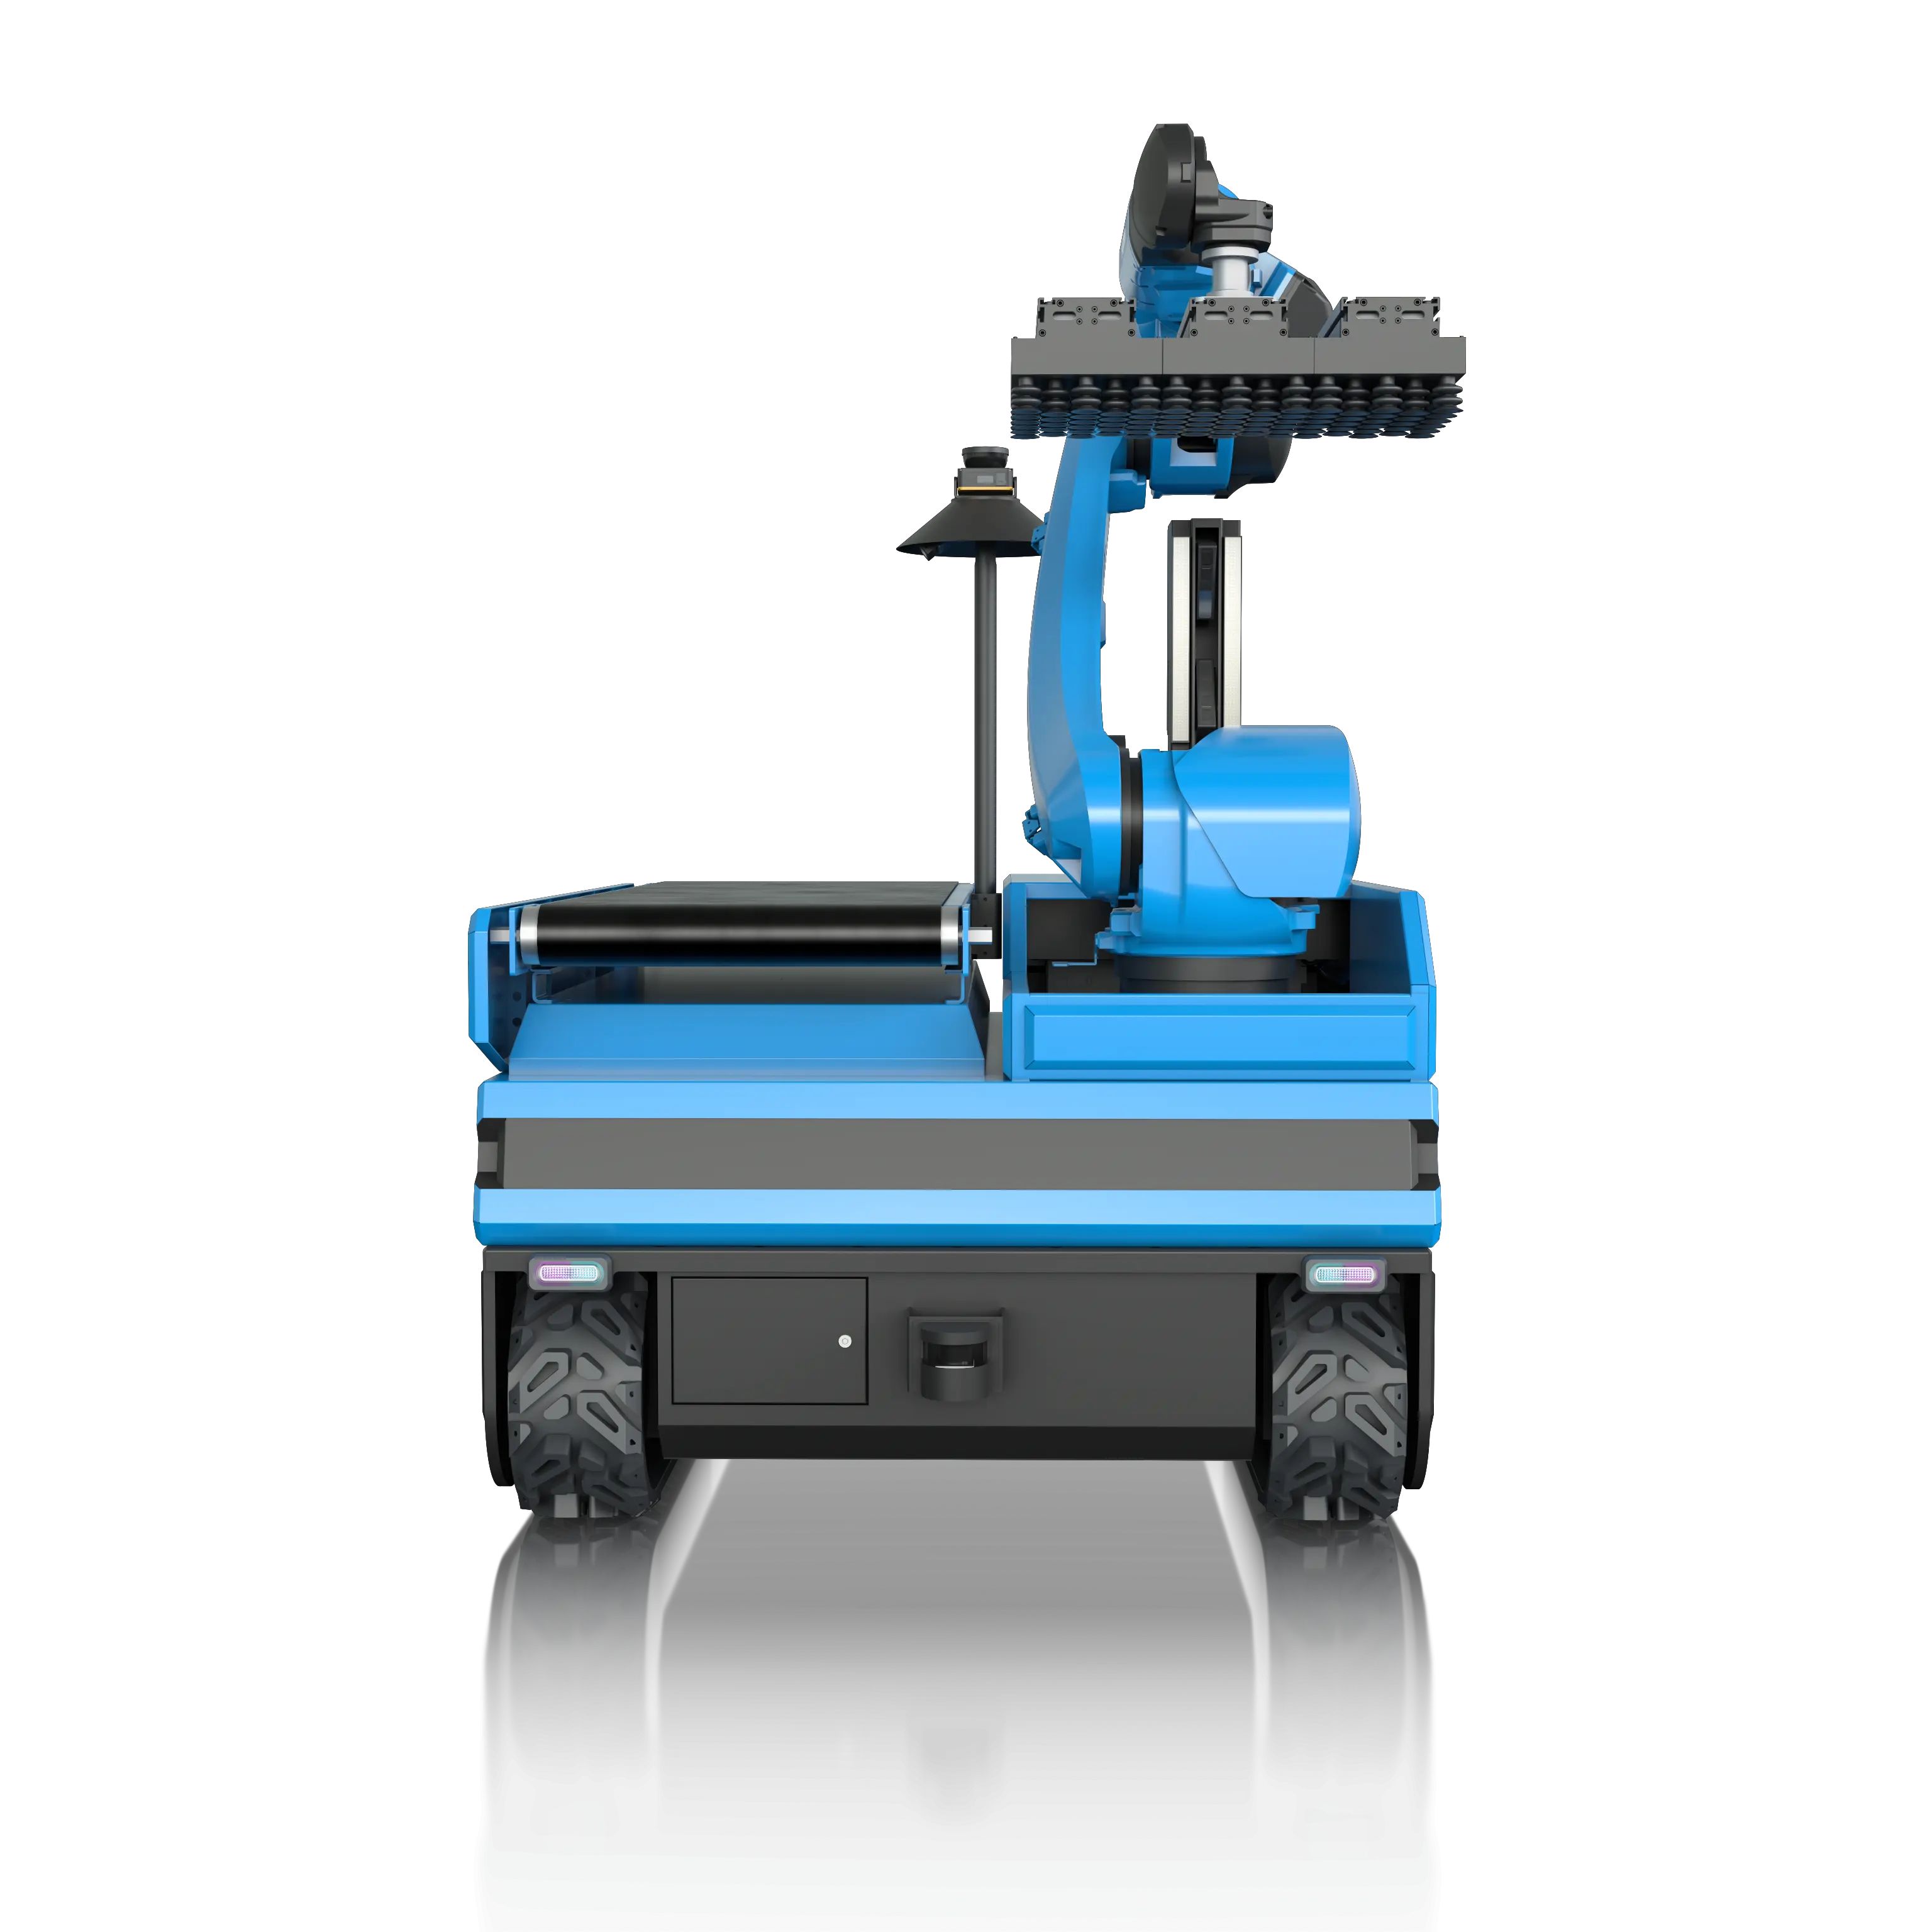 Be-und Entladen von Material Roboter 7-Achsen für mechanischen Roboterarm für Karton und Paket